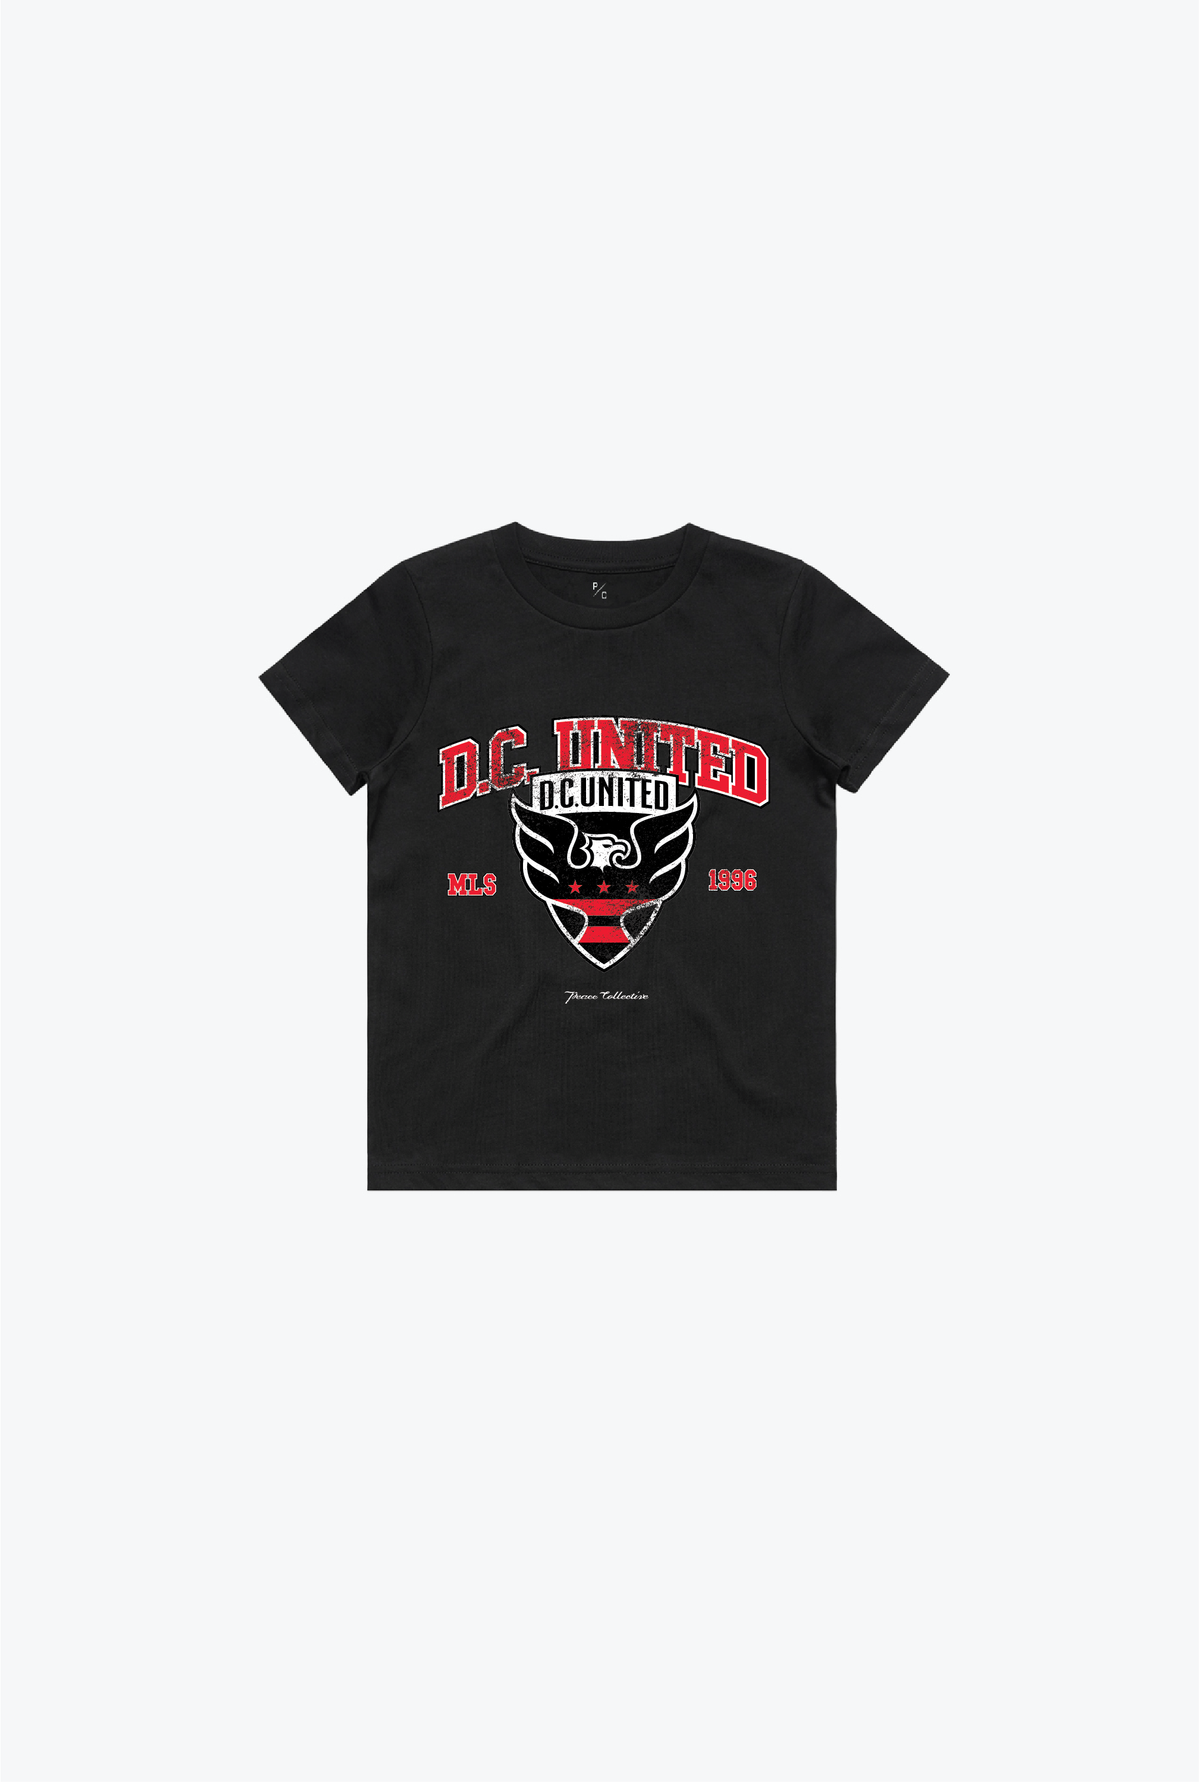 D.C. United Vintage Washed Kids T-Shirt - Black